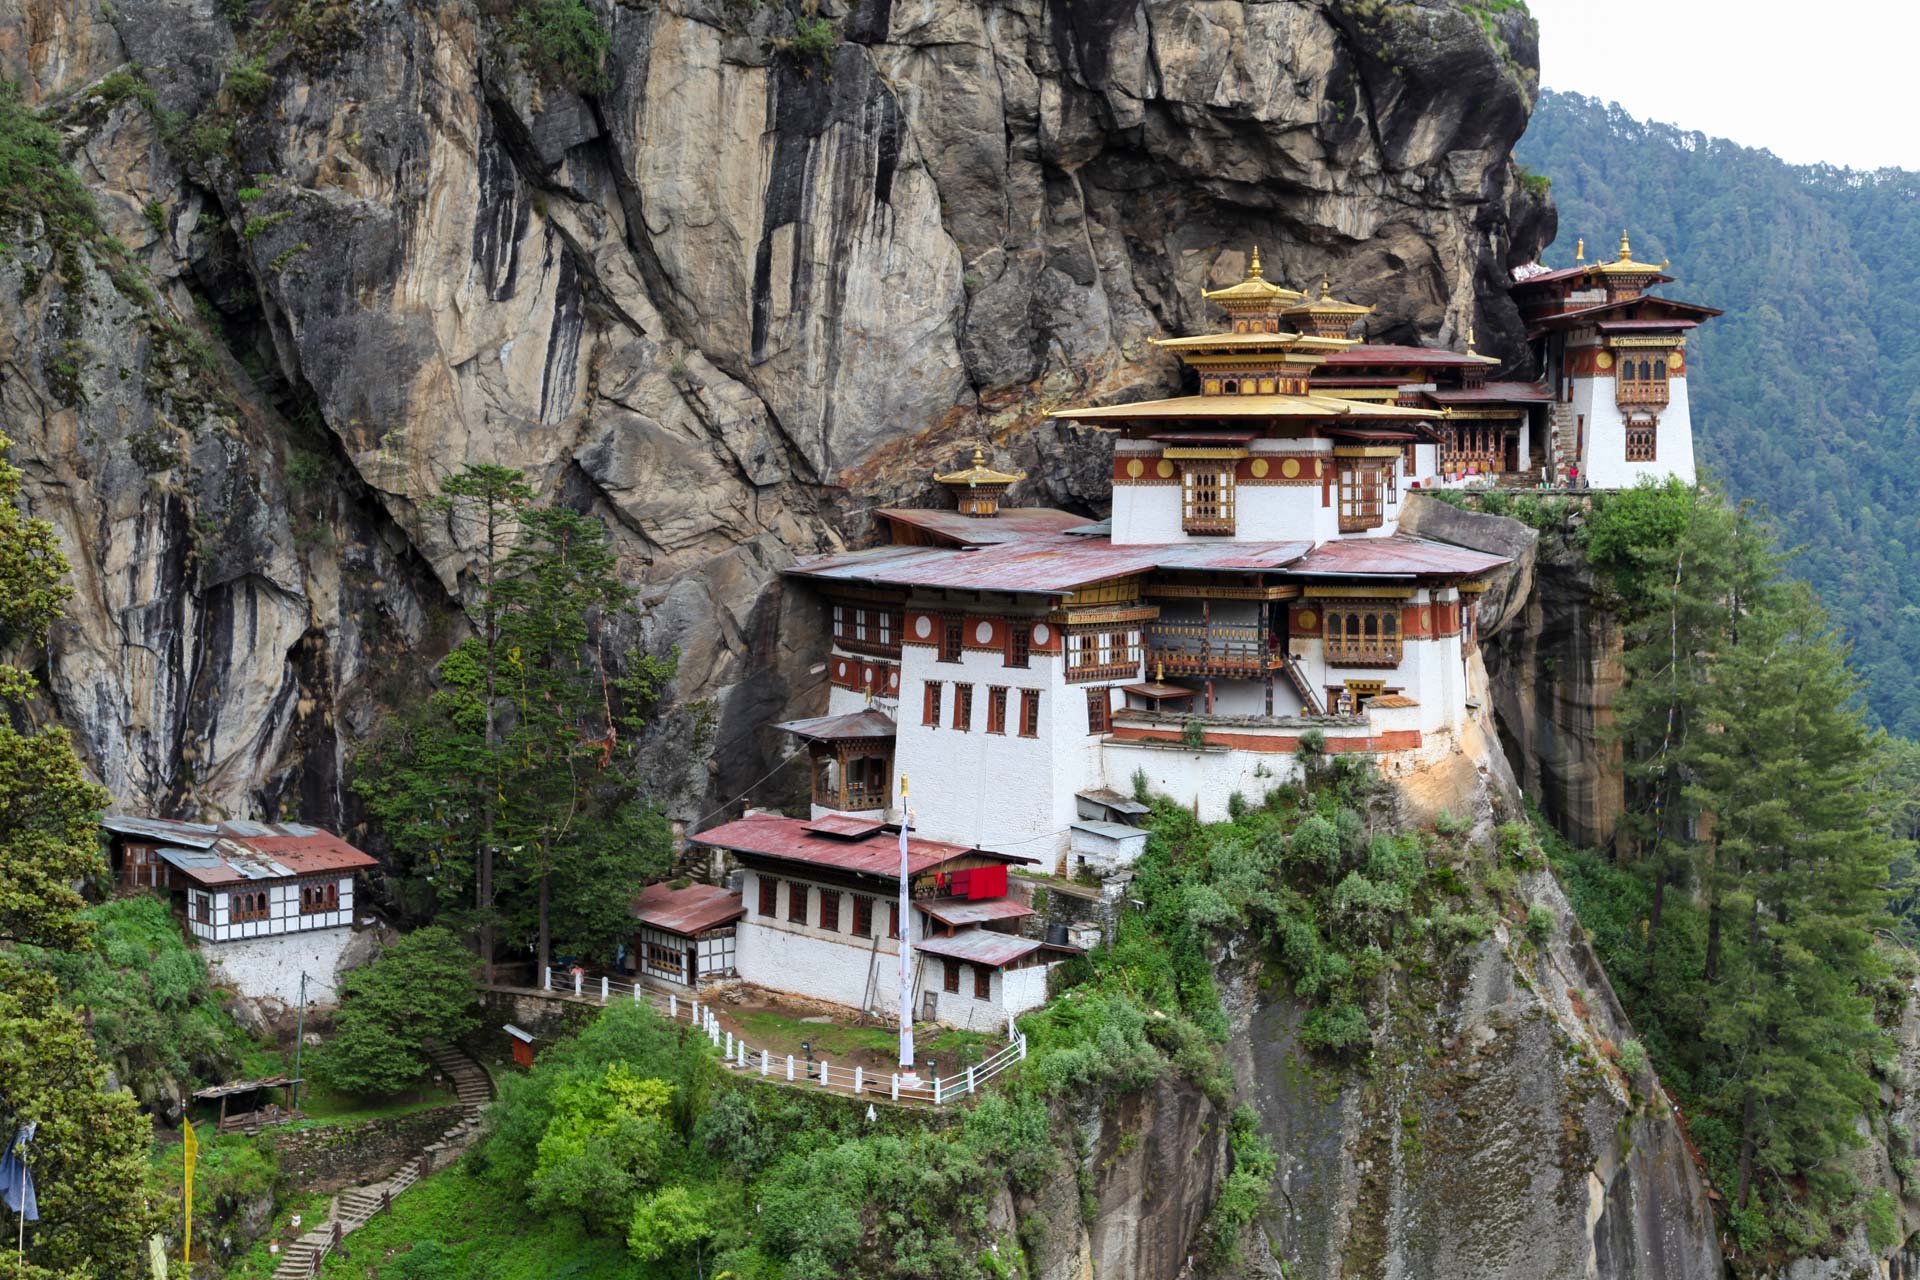 【ブータン観光】聖地タクツァン僧院 ブータン旅行ならGNH 一人旅でもツアーでも